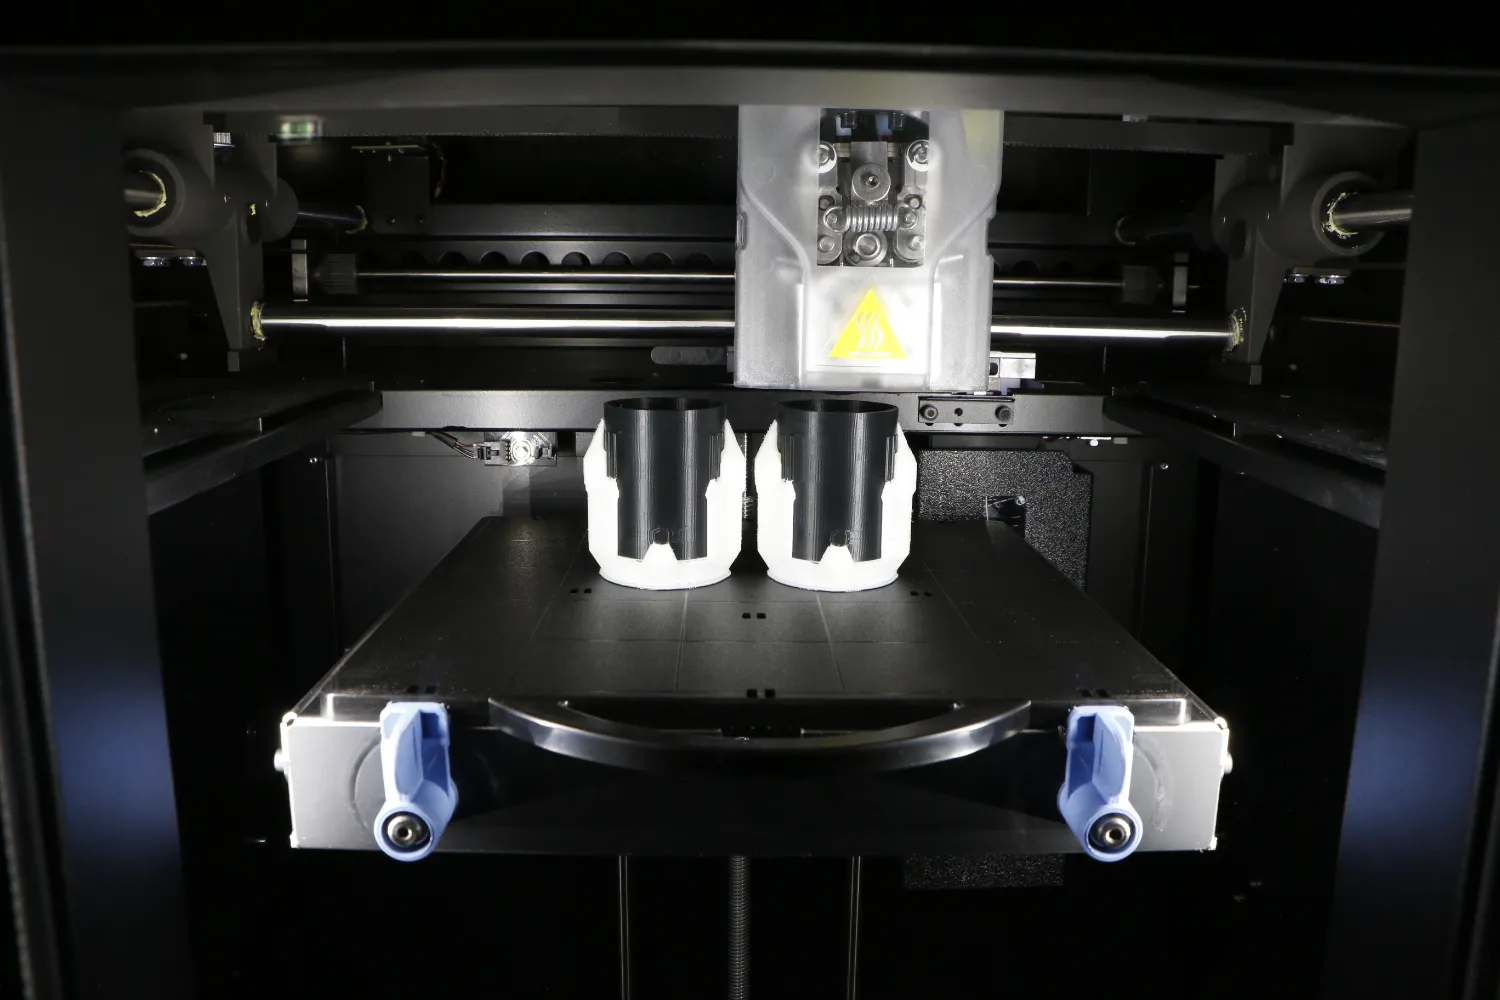 La technologie d'impression 3D offre un moyen rapide et facile de réparer vos appareils ménagers cassés